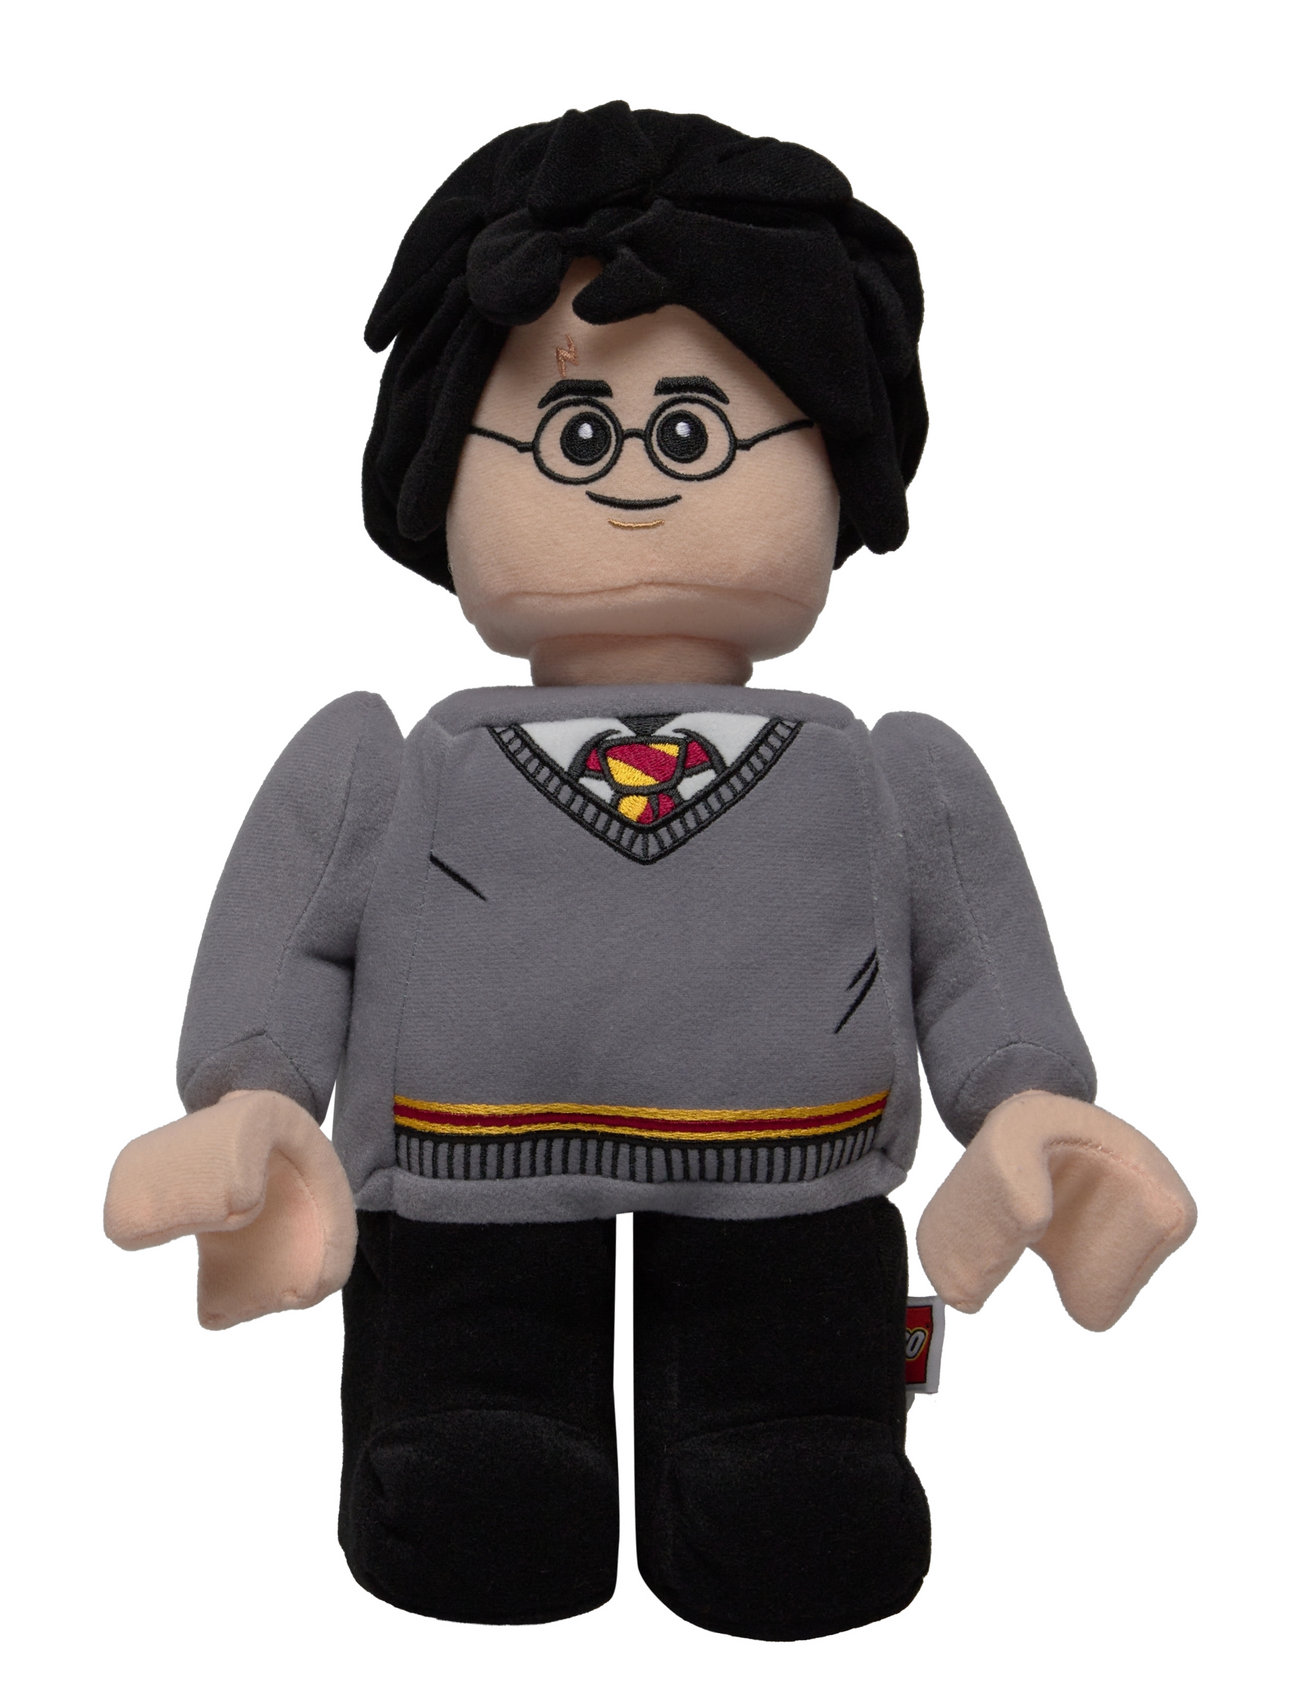 Lego Harry Potter Plush Toy Toys Soft Toys Stuffed Toys Multi/patterned Harry Potter